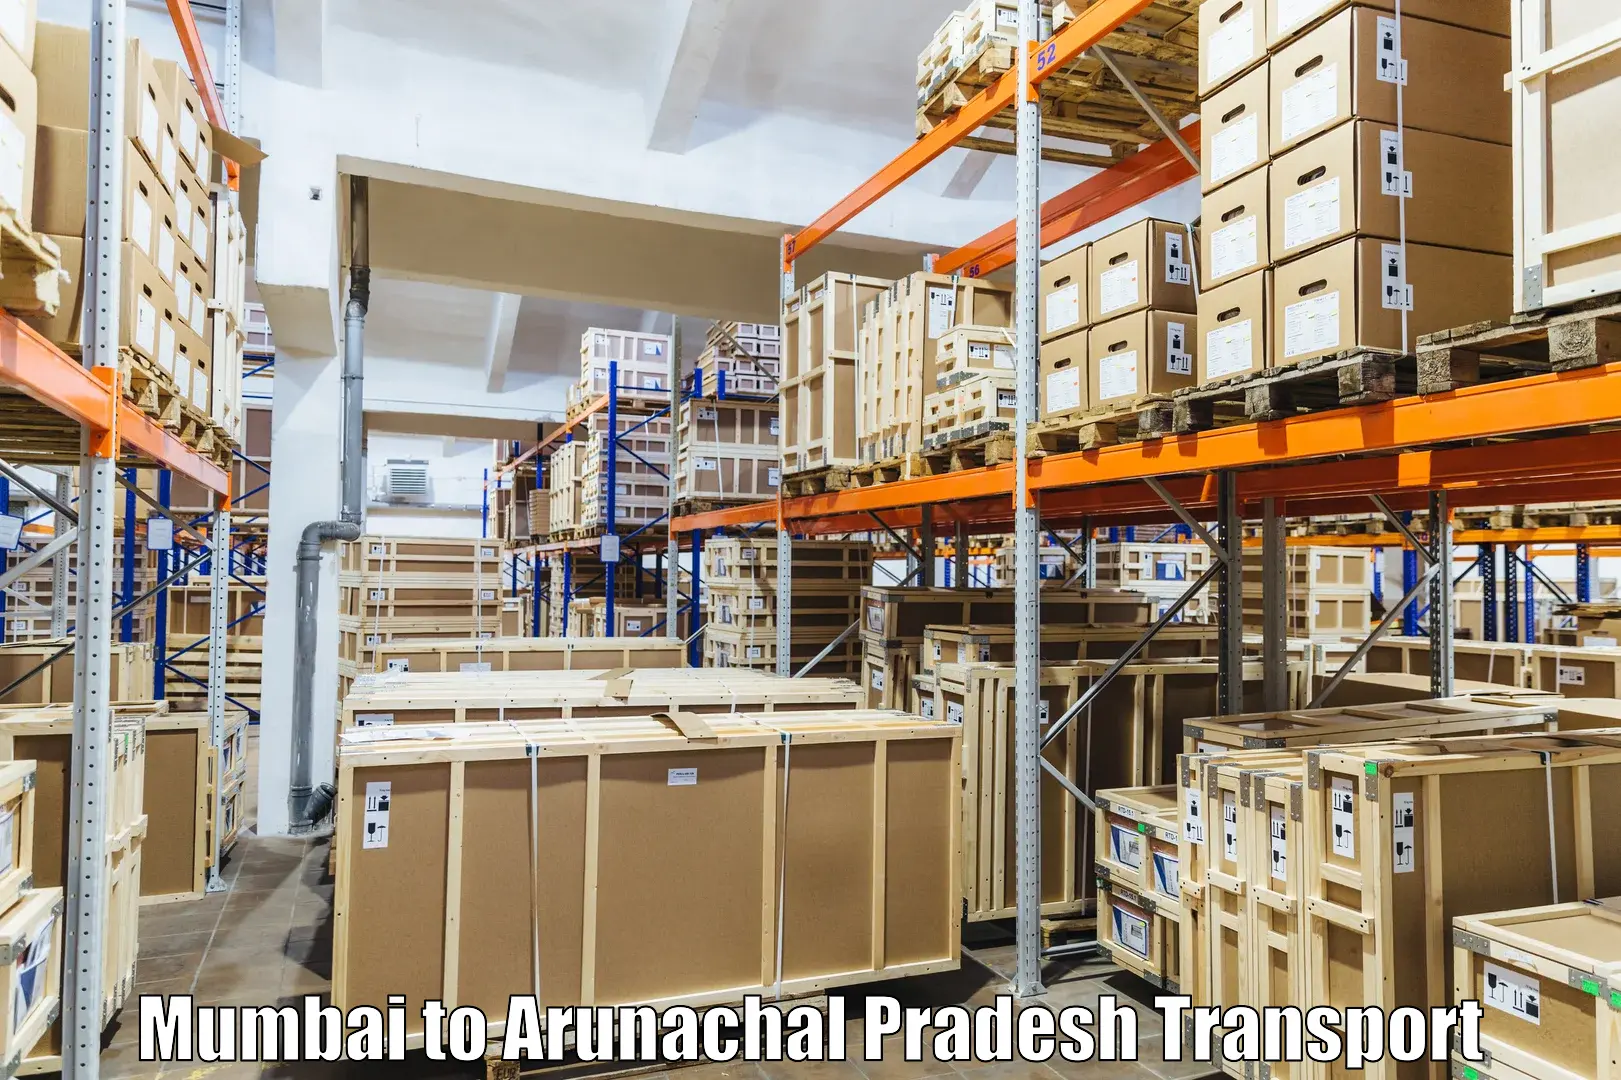 Truck transport companies in India Mumbai to Chowkham